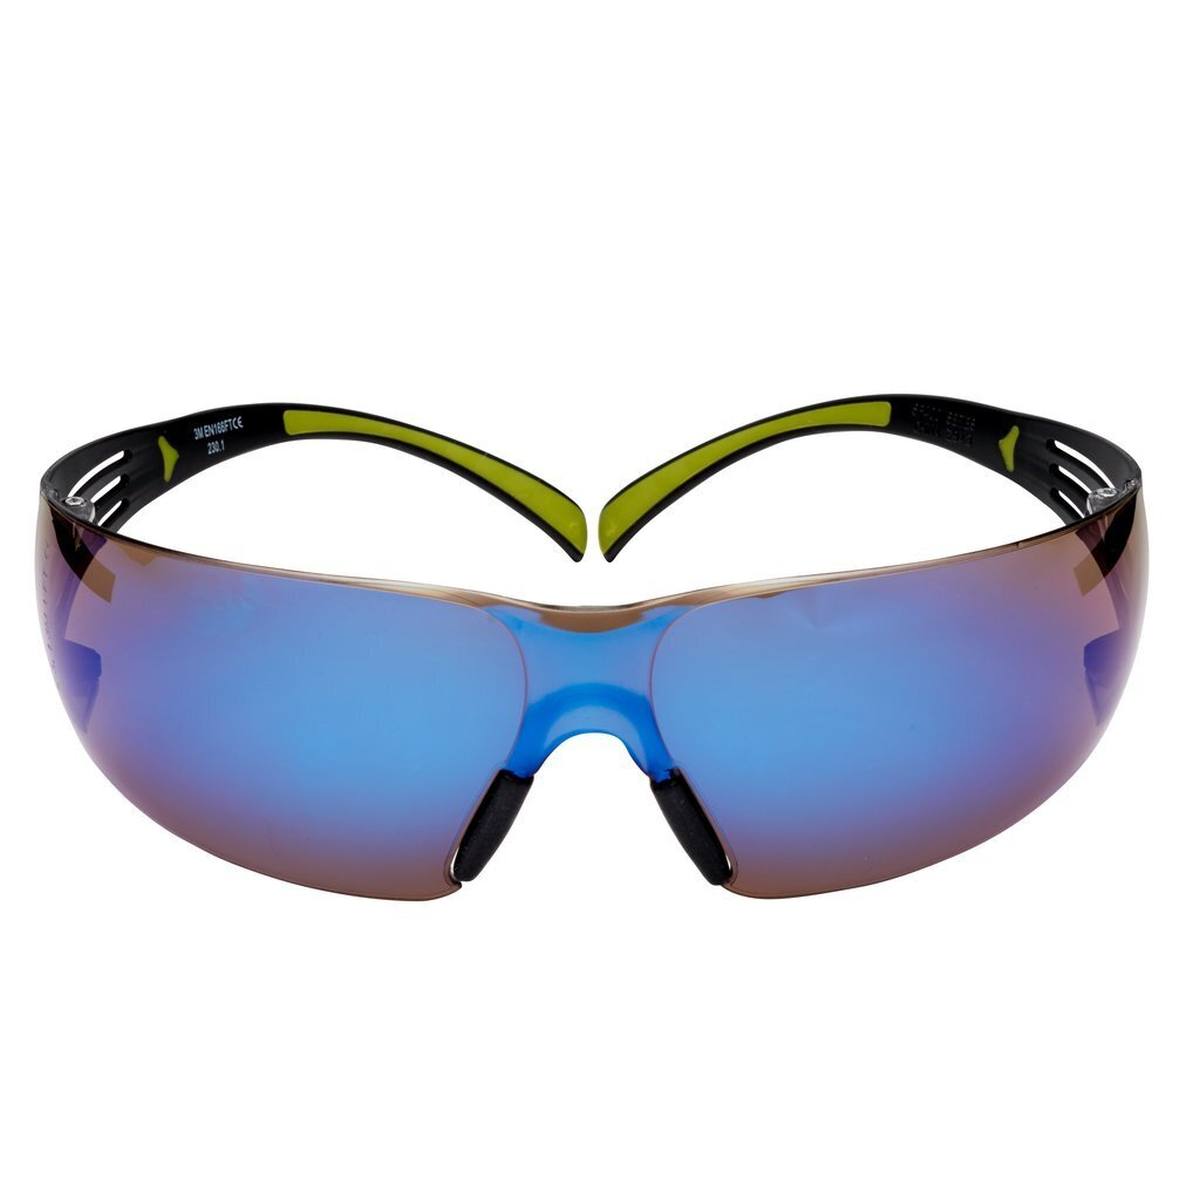 3M SecureFit 400 Schutzbrille, schwarz/grüne Bügel, Antikratz-Beschichtung, blaue Scheibe, verspiegelt, SF408AS-EU